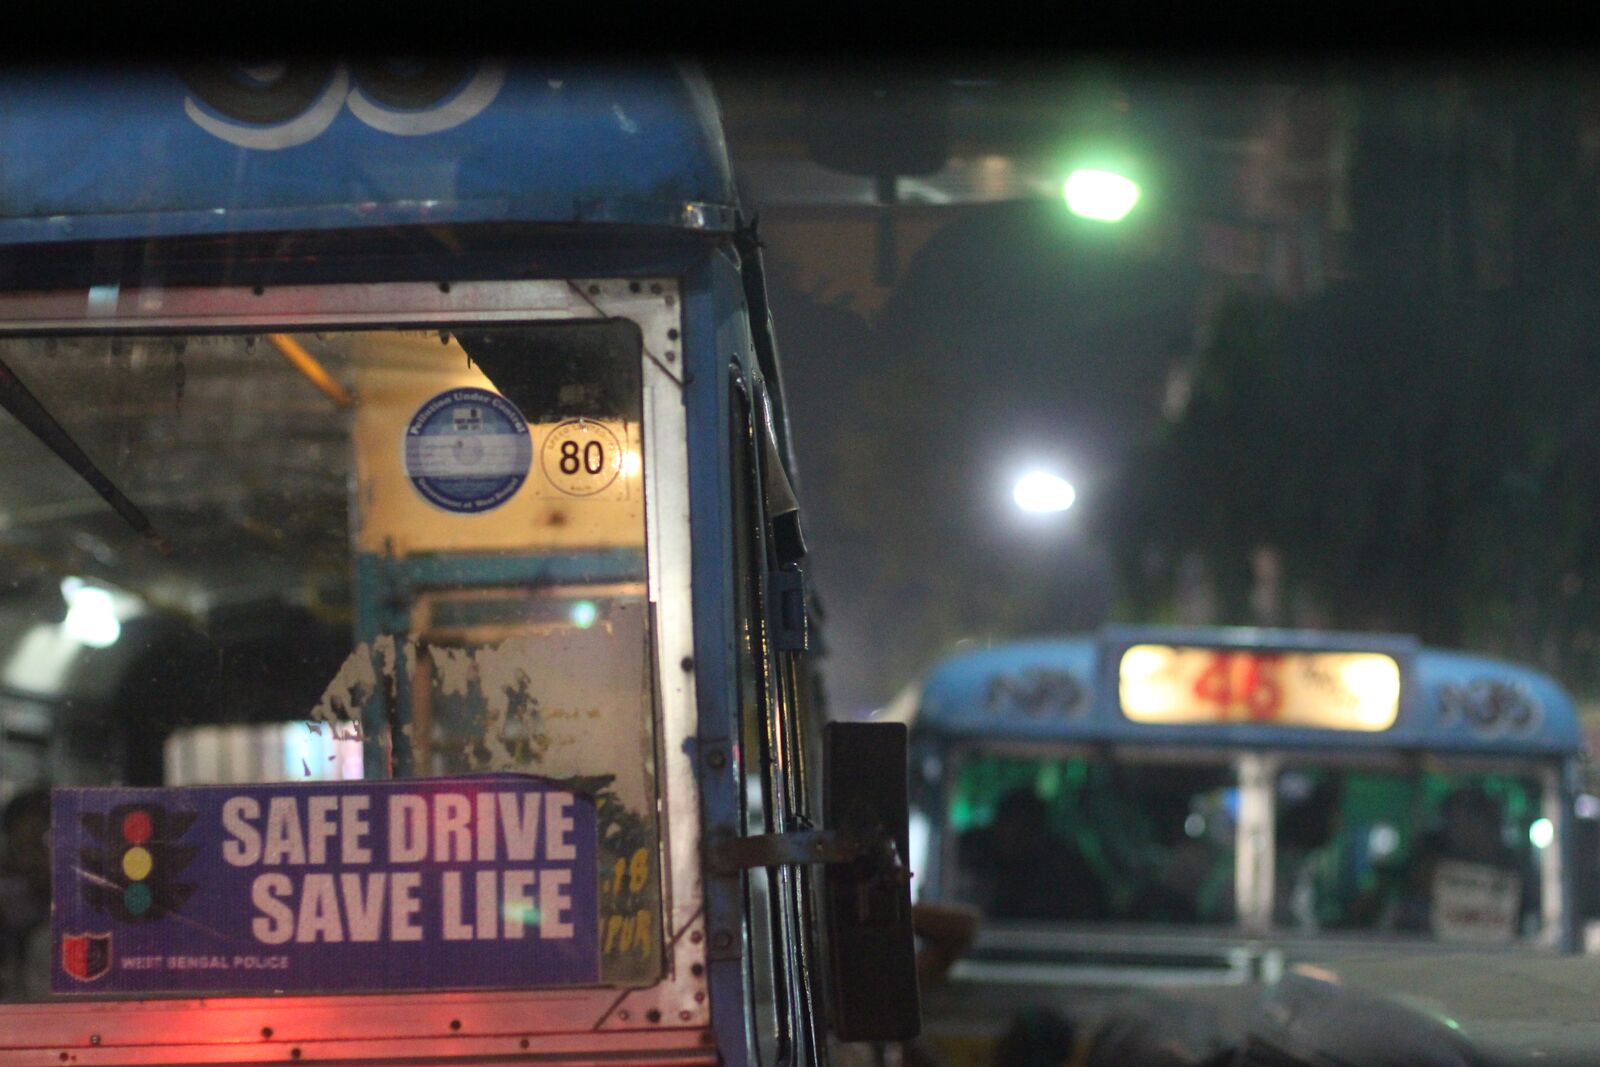 Safe Drive Save life © Anja Kapunkt